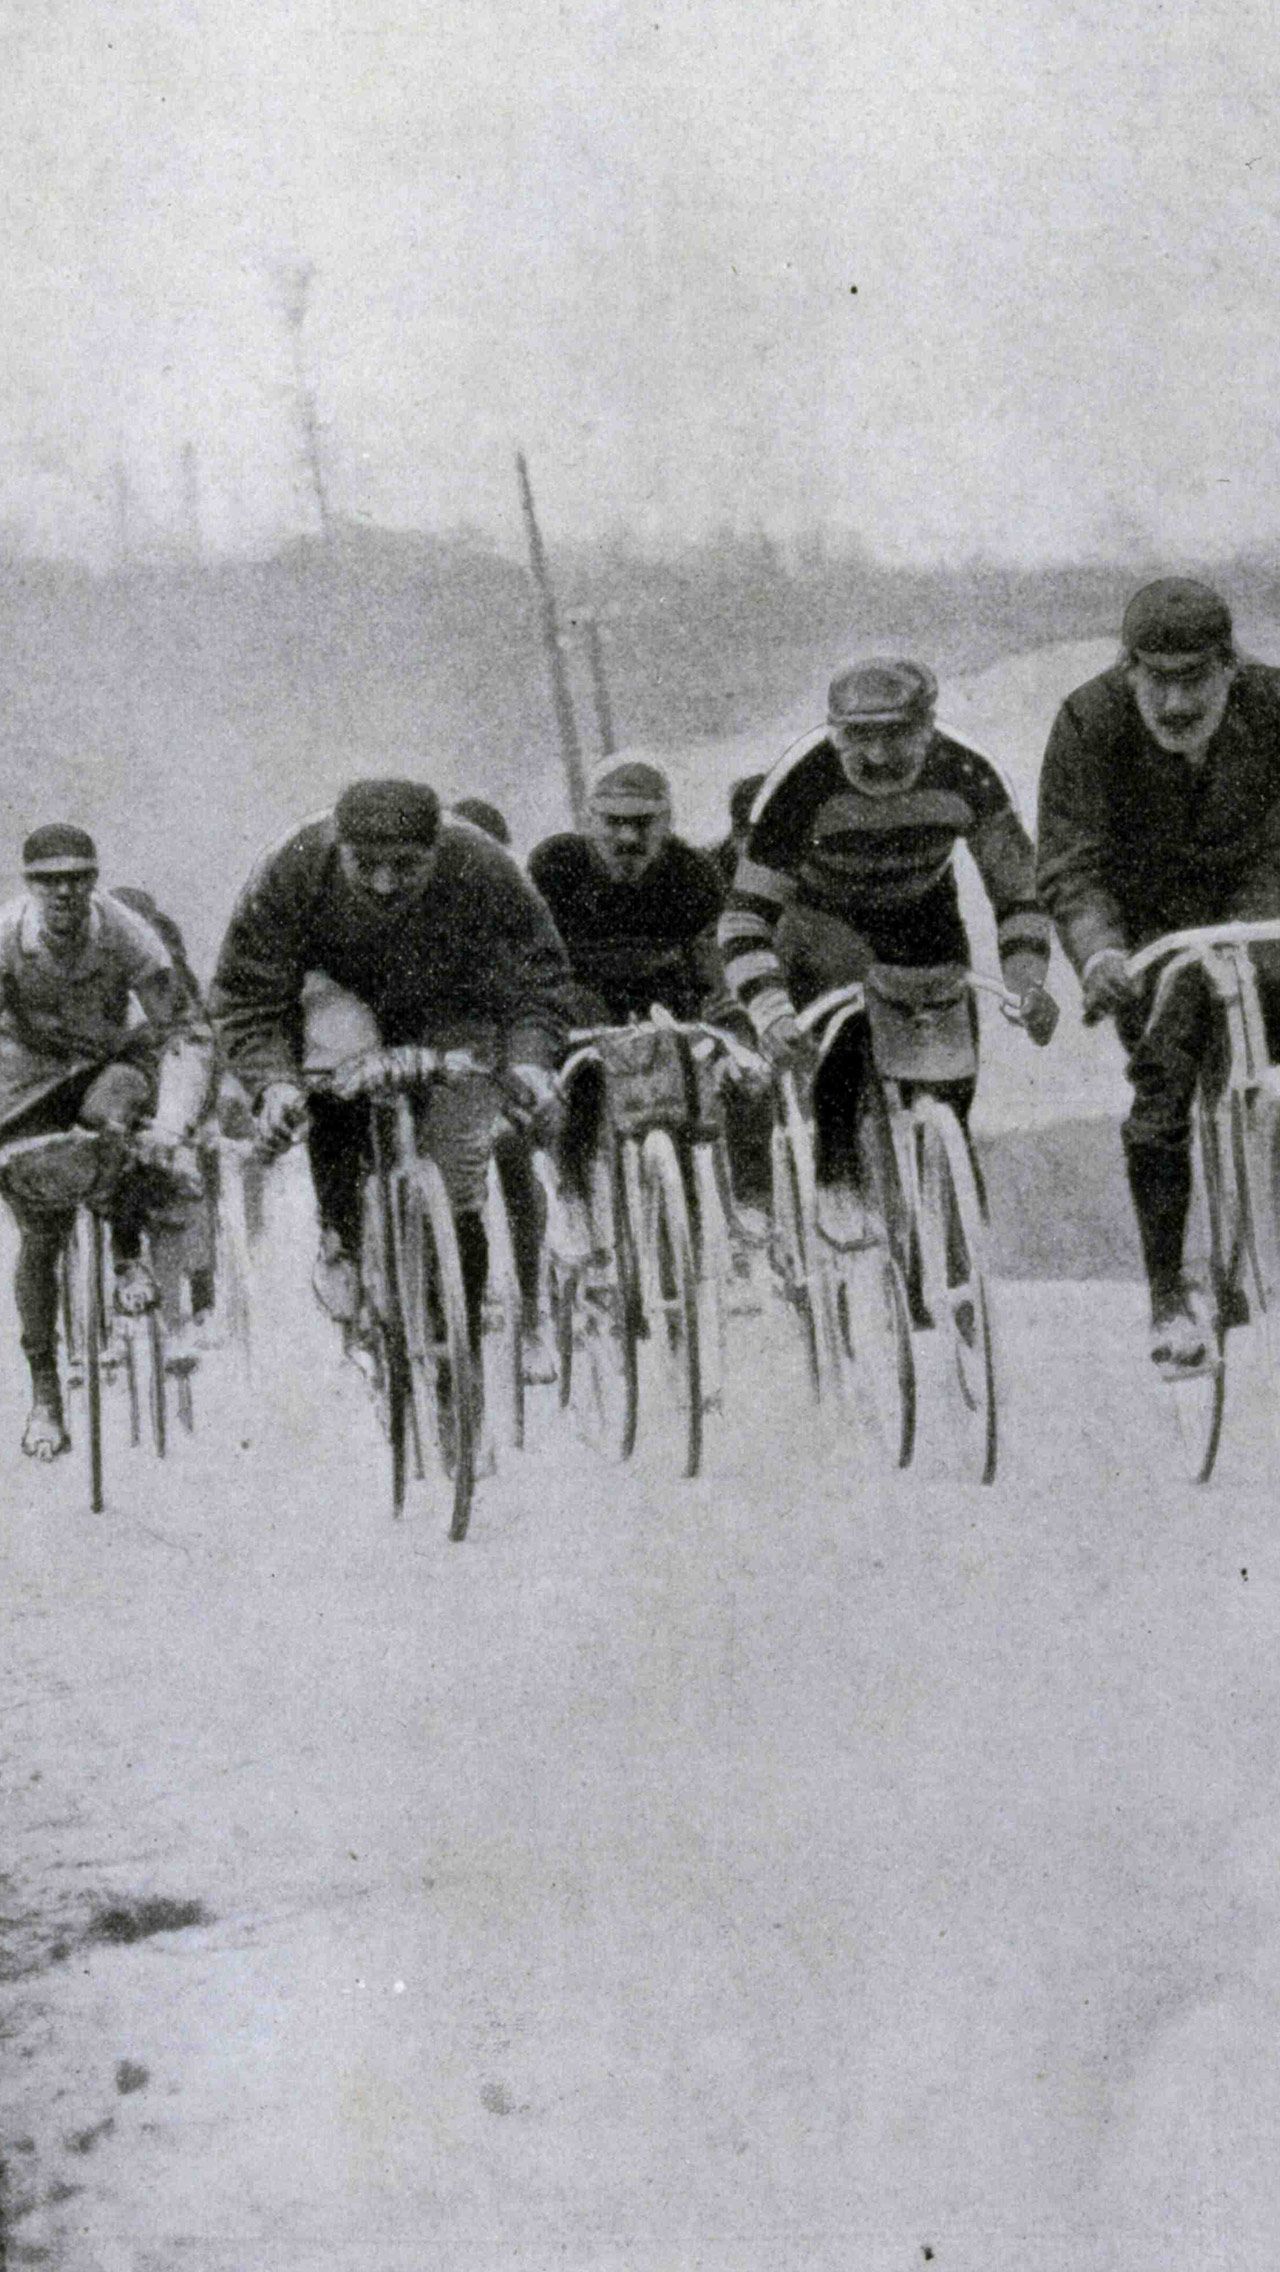 Ещё в 1905 году проведению гонки пытались помешать обычные хулиганы — они выбросили на трассу более 100 кг гвоздей! Из-за этого финишировать смогла только четверть от стартовавших участников.